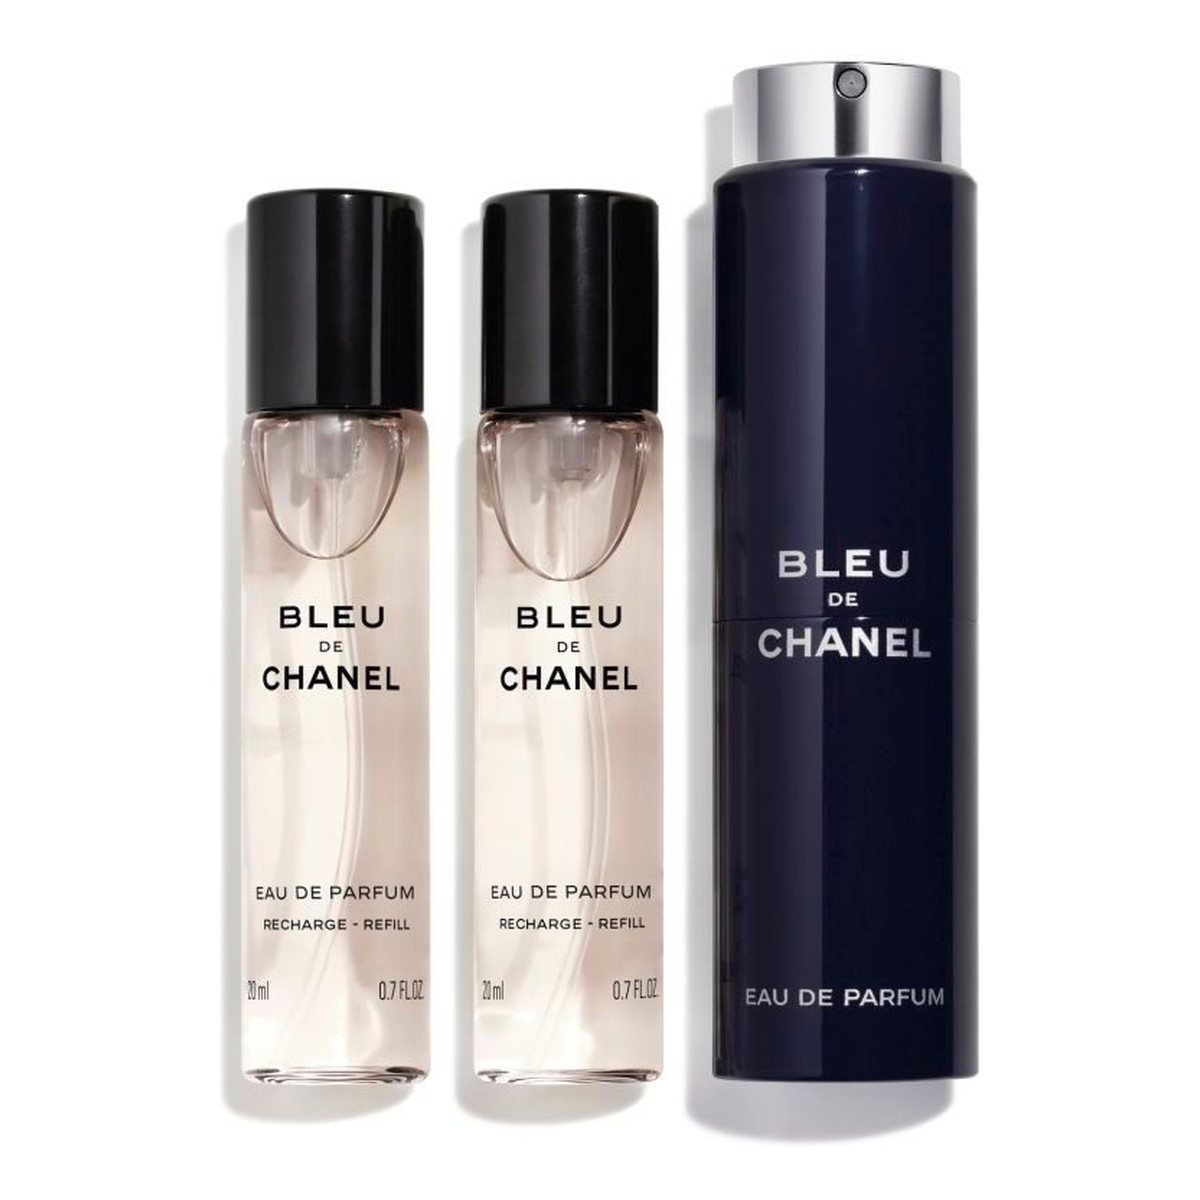 Chanel Bleu de Chanel twist and spray Woda perfumowana spray z wymiennym wkładem 3x 20ml